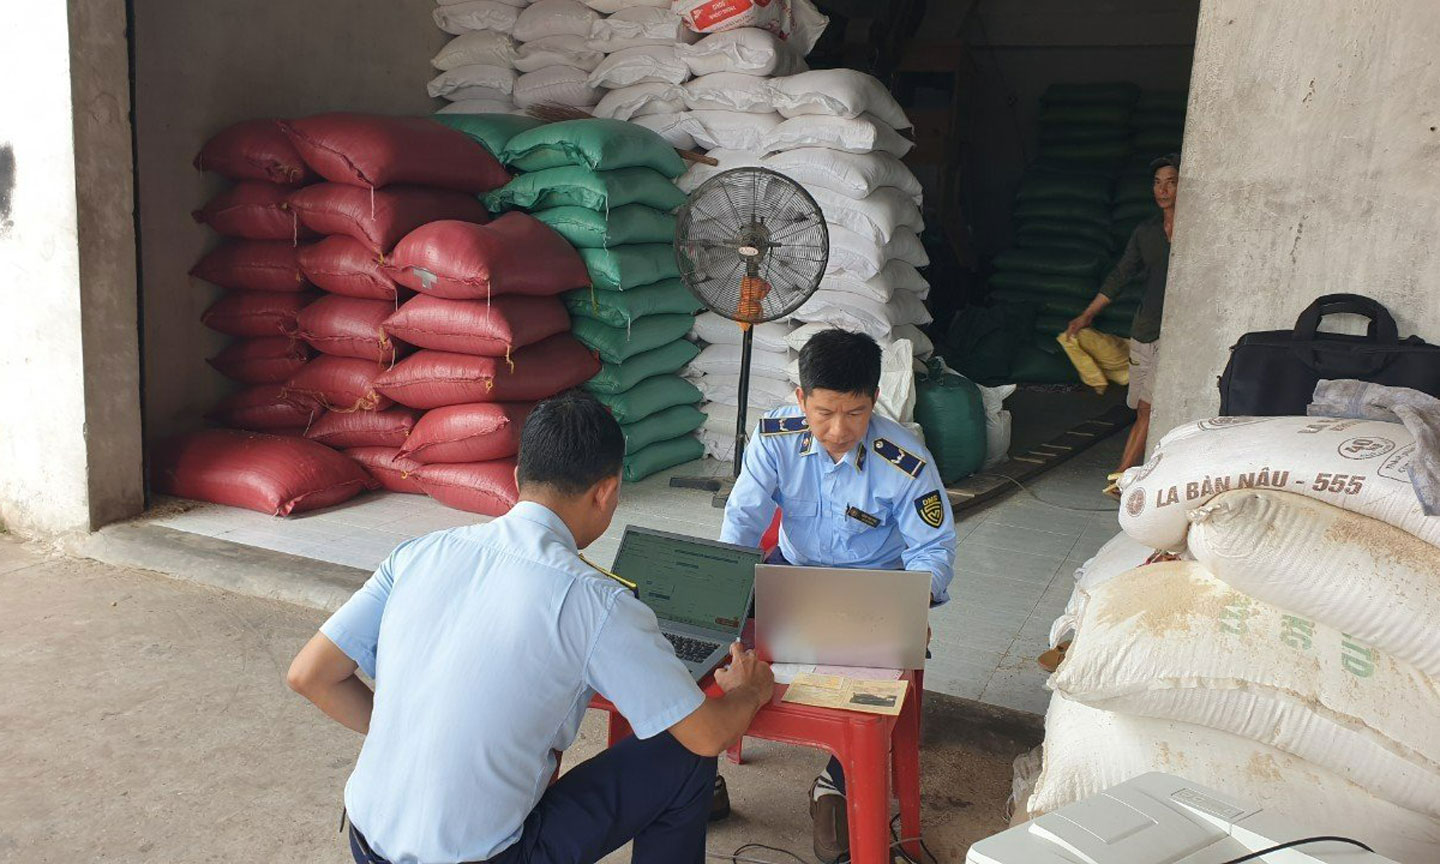 Cục Quản lý thị trường Bến Tre đã phát hiện và tạm giữ 1.040 bao gạo trắng nhập khẩu từ Ấn Độ với số lượng 52 tấn không có nhãn phụ bằng tiếng Việt Nam với tổng trị giá hàng hóa 624.000.000 đồng.